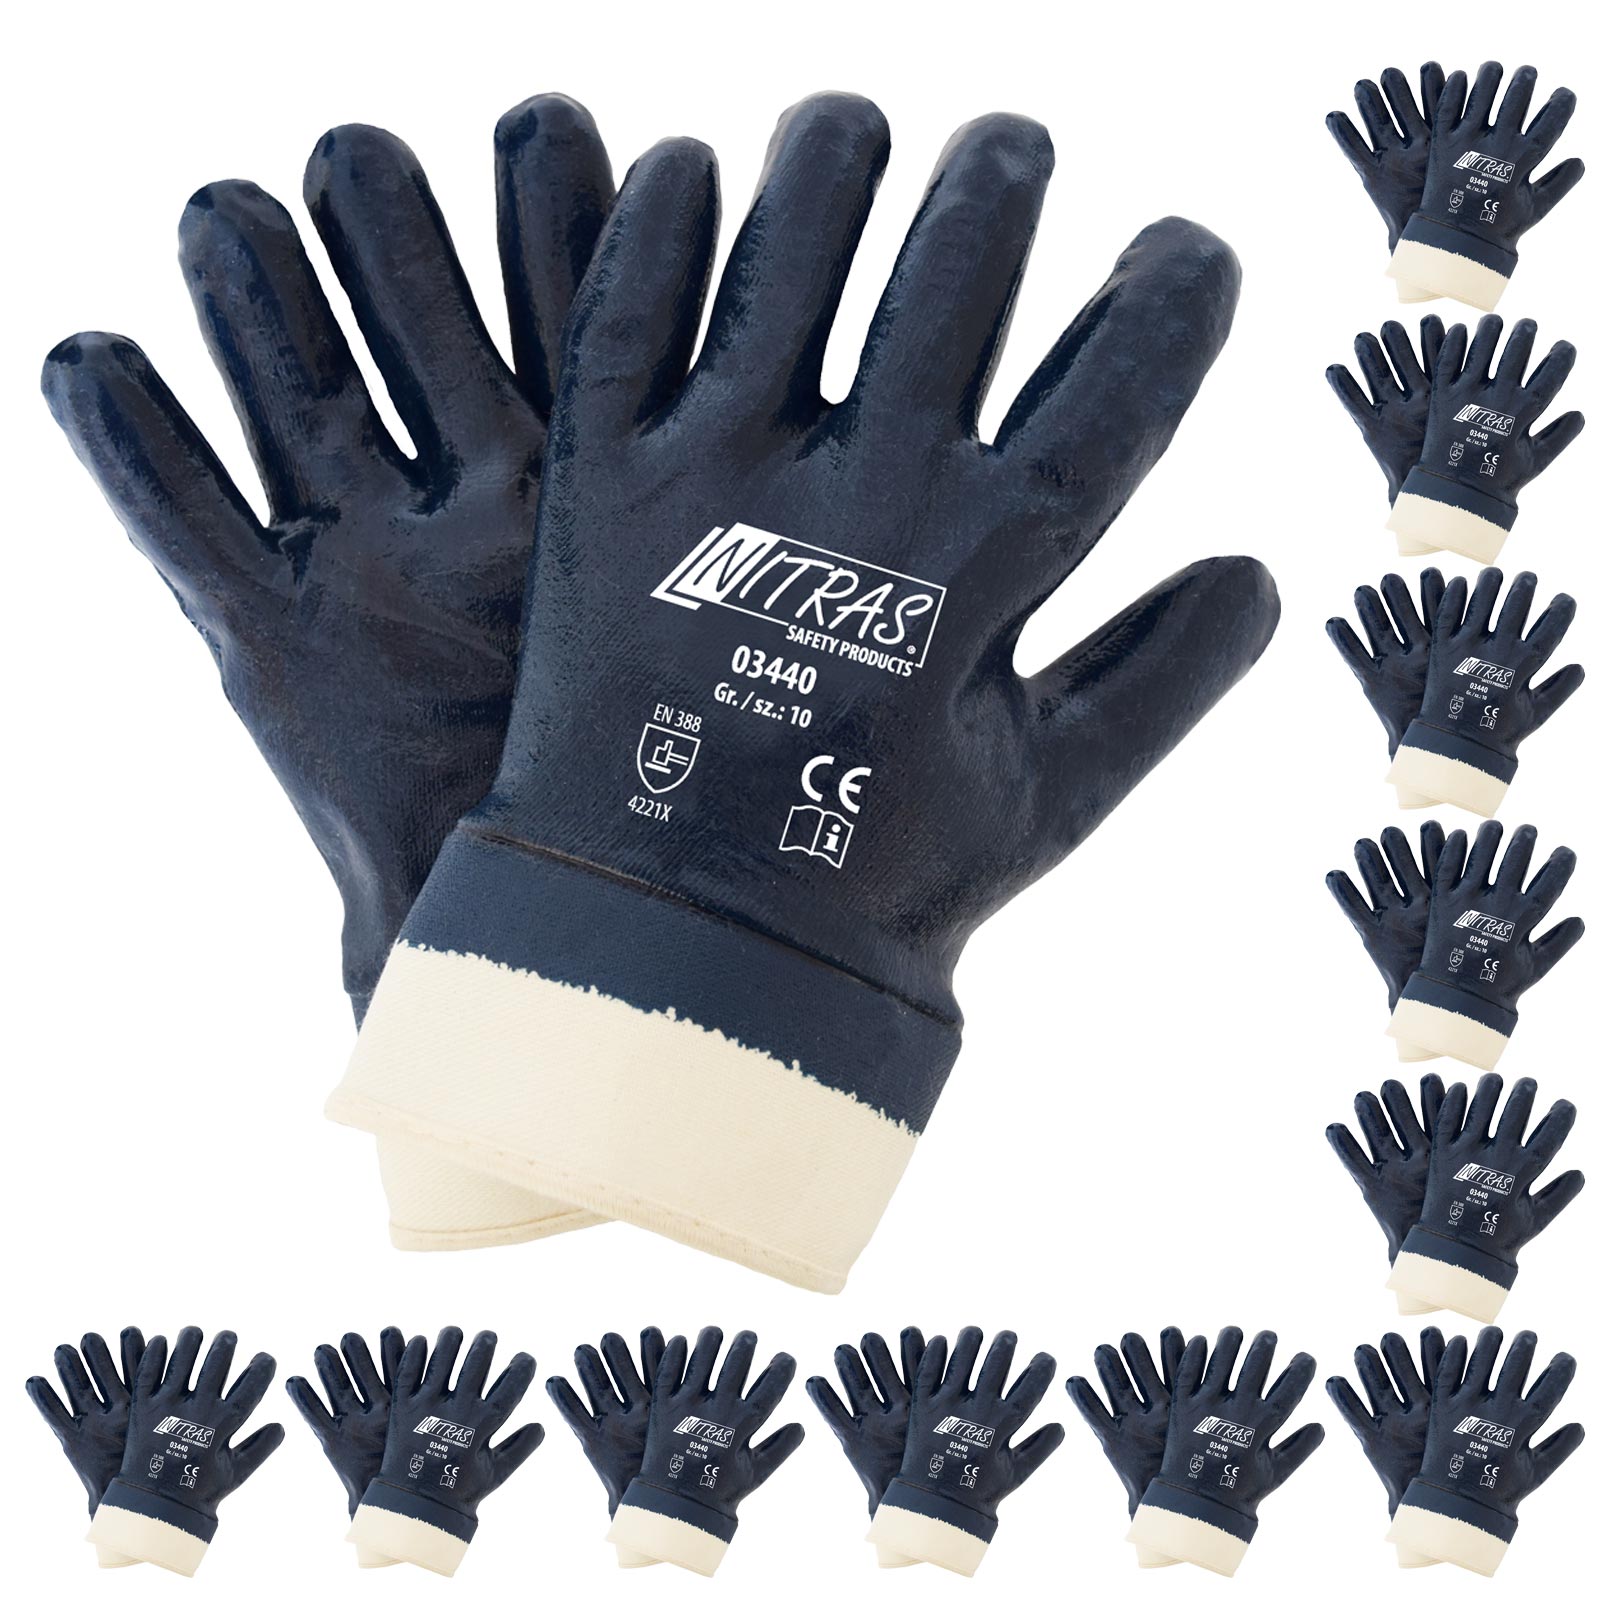 NITRAS 03440 Nitrilhandschuhe Arbeitshandschuhe Handschuhe mit Stulpe - 12 Paar Größe:8 von NITRAS